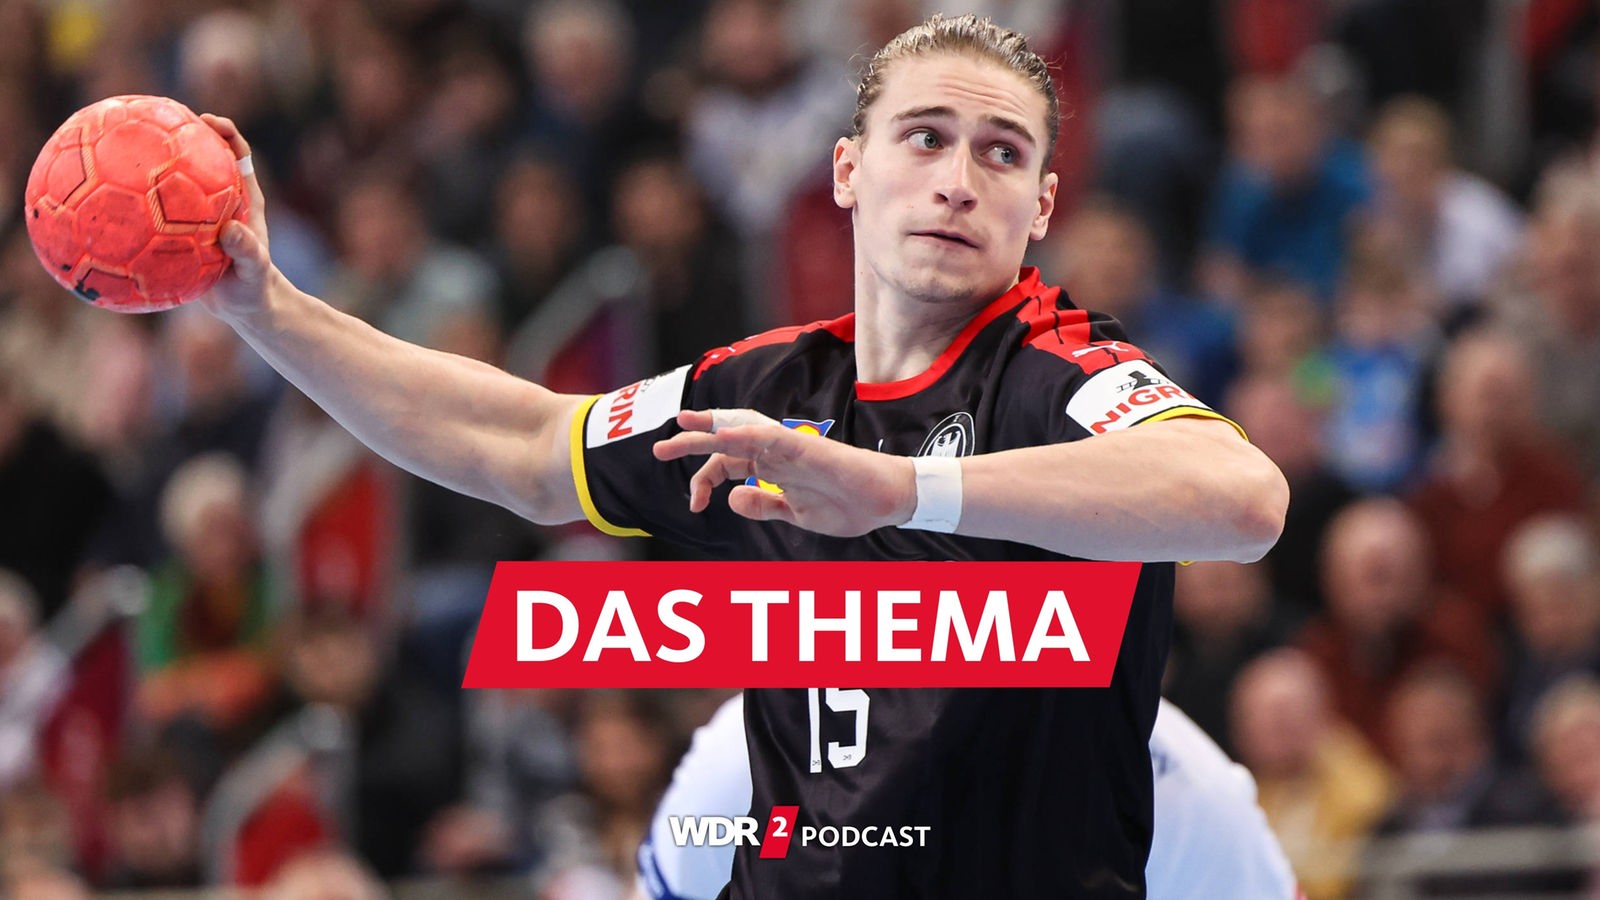 Handball WM Deutsches Team startet ins Turnier - WDR 2 Das Thema - WDR 2 - Podcasts und Audios - Mediathek